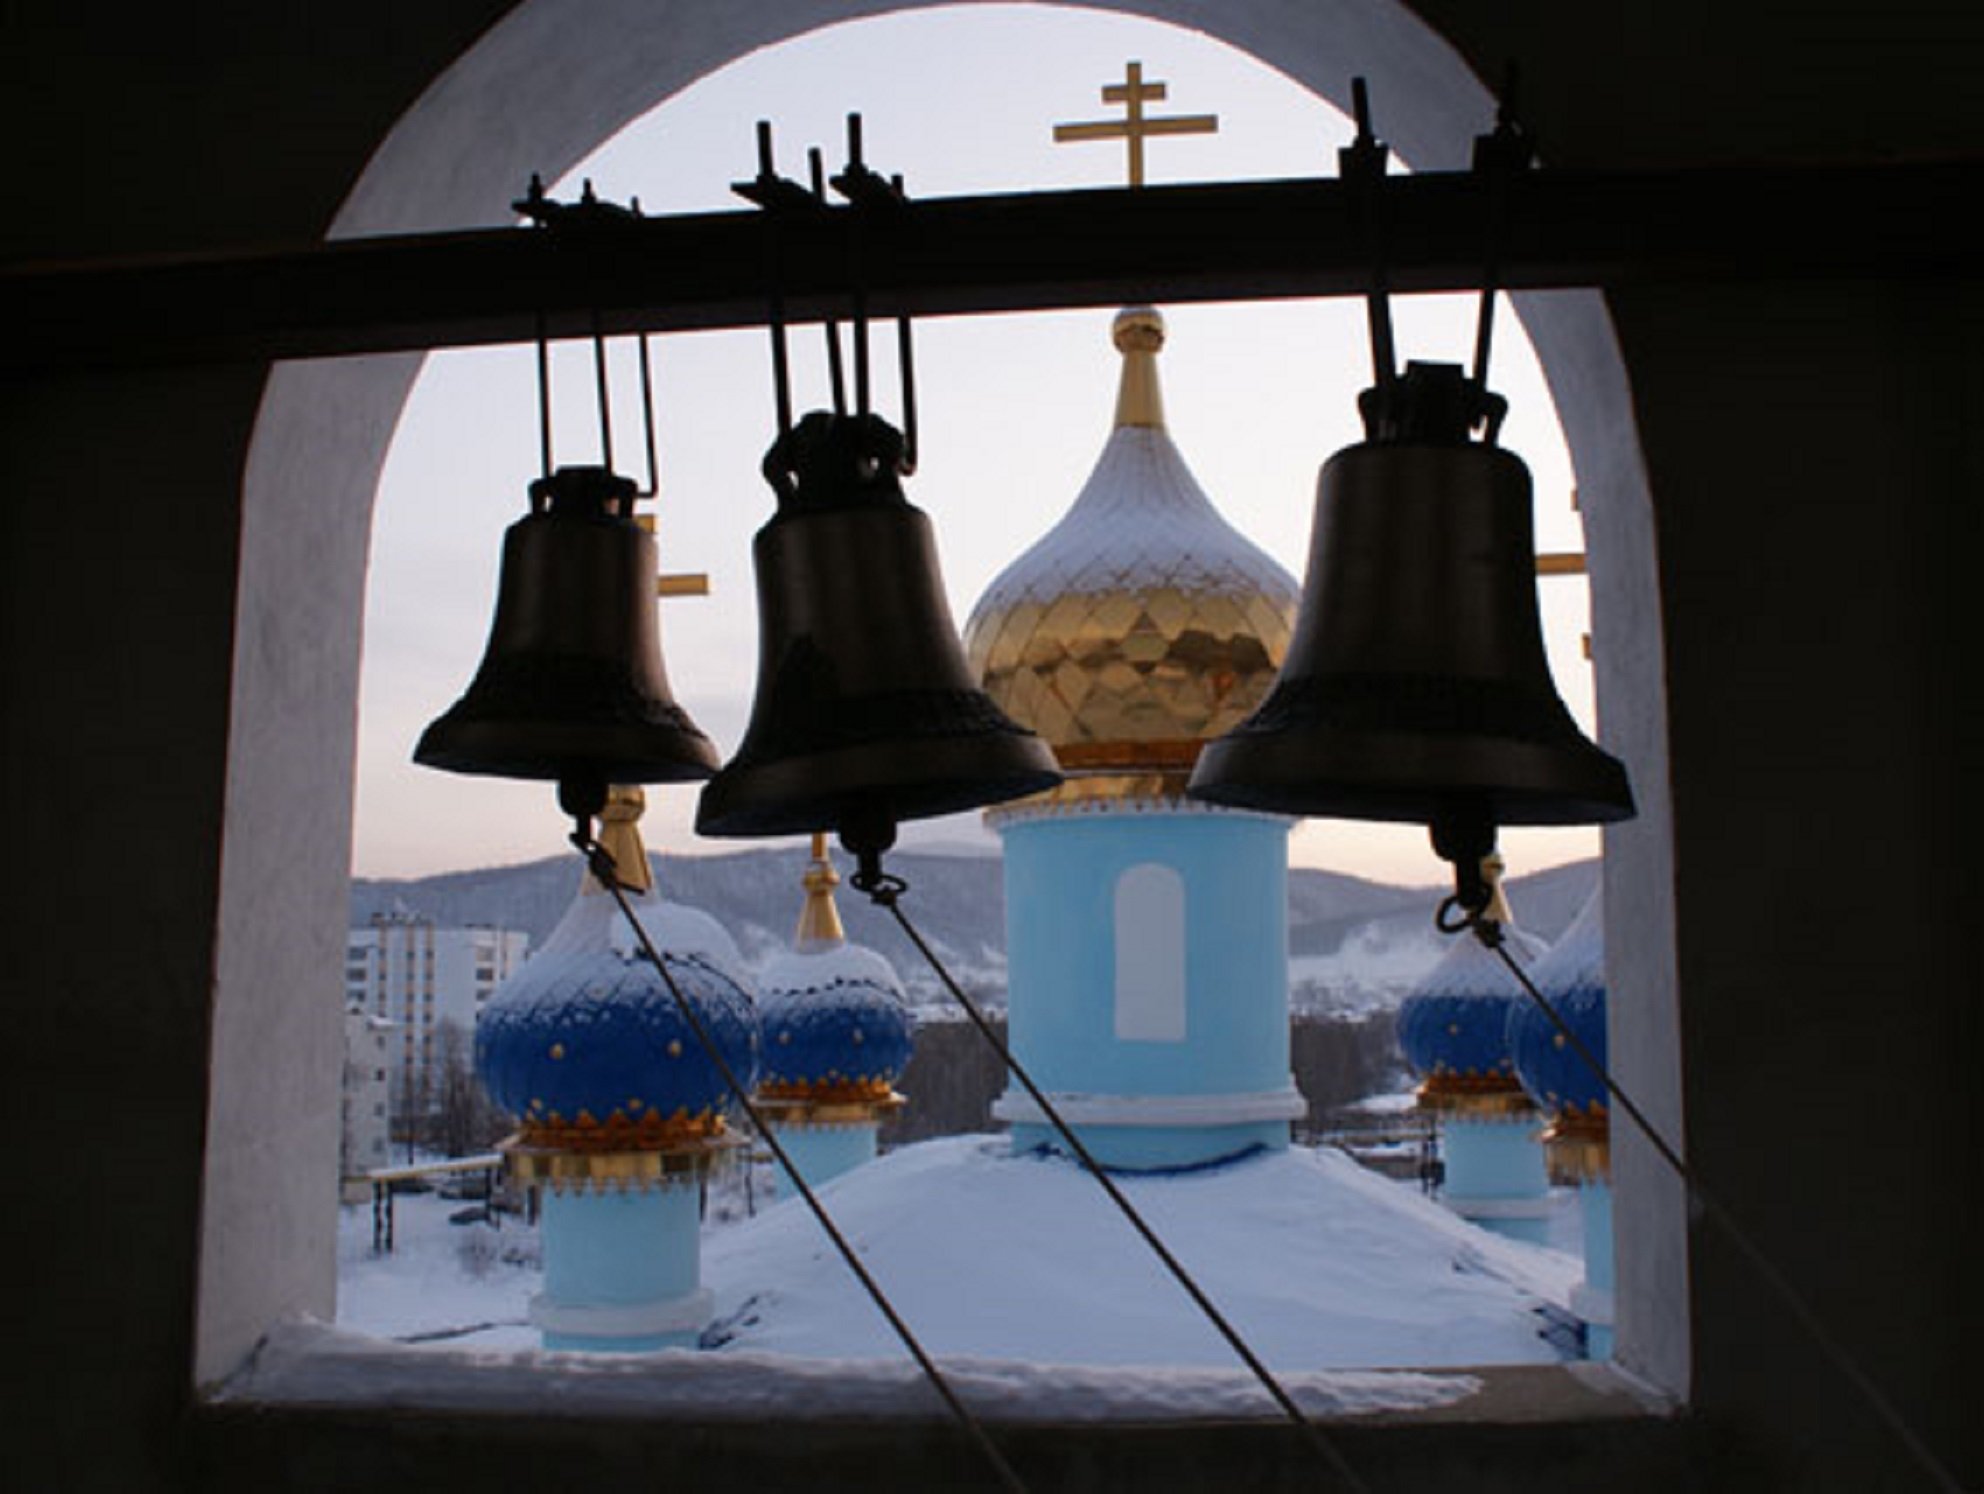 Нижний звон. Колокольный звон в церкви. Старообрядческий храм колокольный звон. Колокольный звон в русской православной церкви.